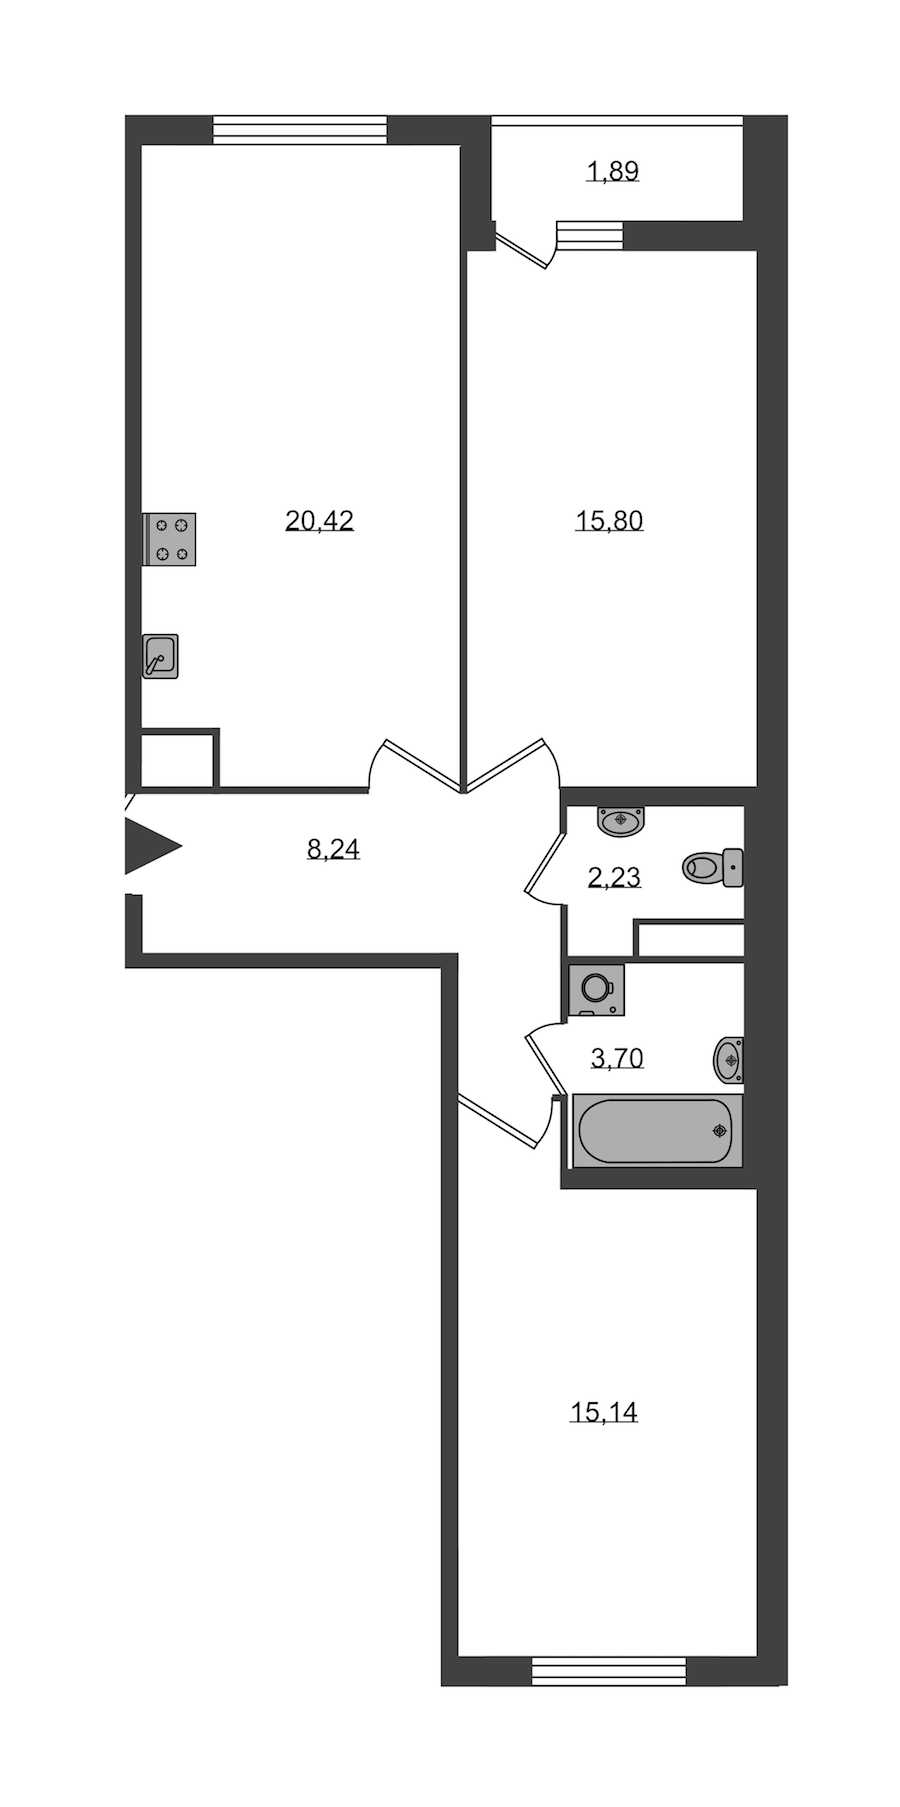 Двухкомнатная квартира в : площадь 65.53 м2 , этаж: 1 – купить в Санкт-Петербурге